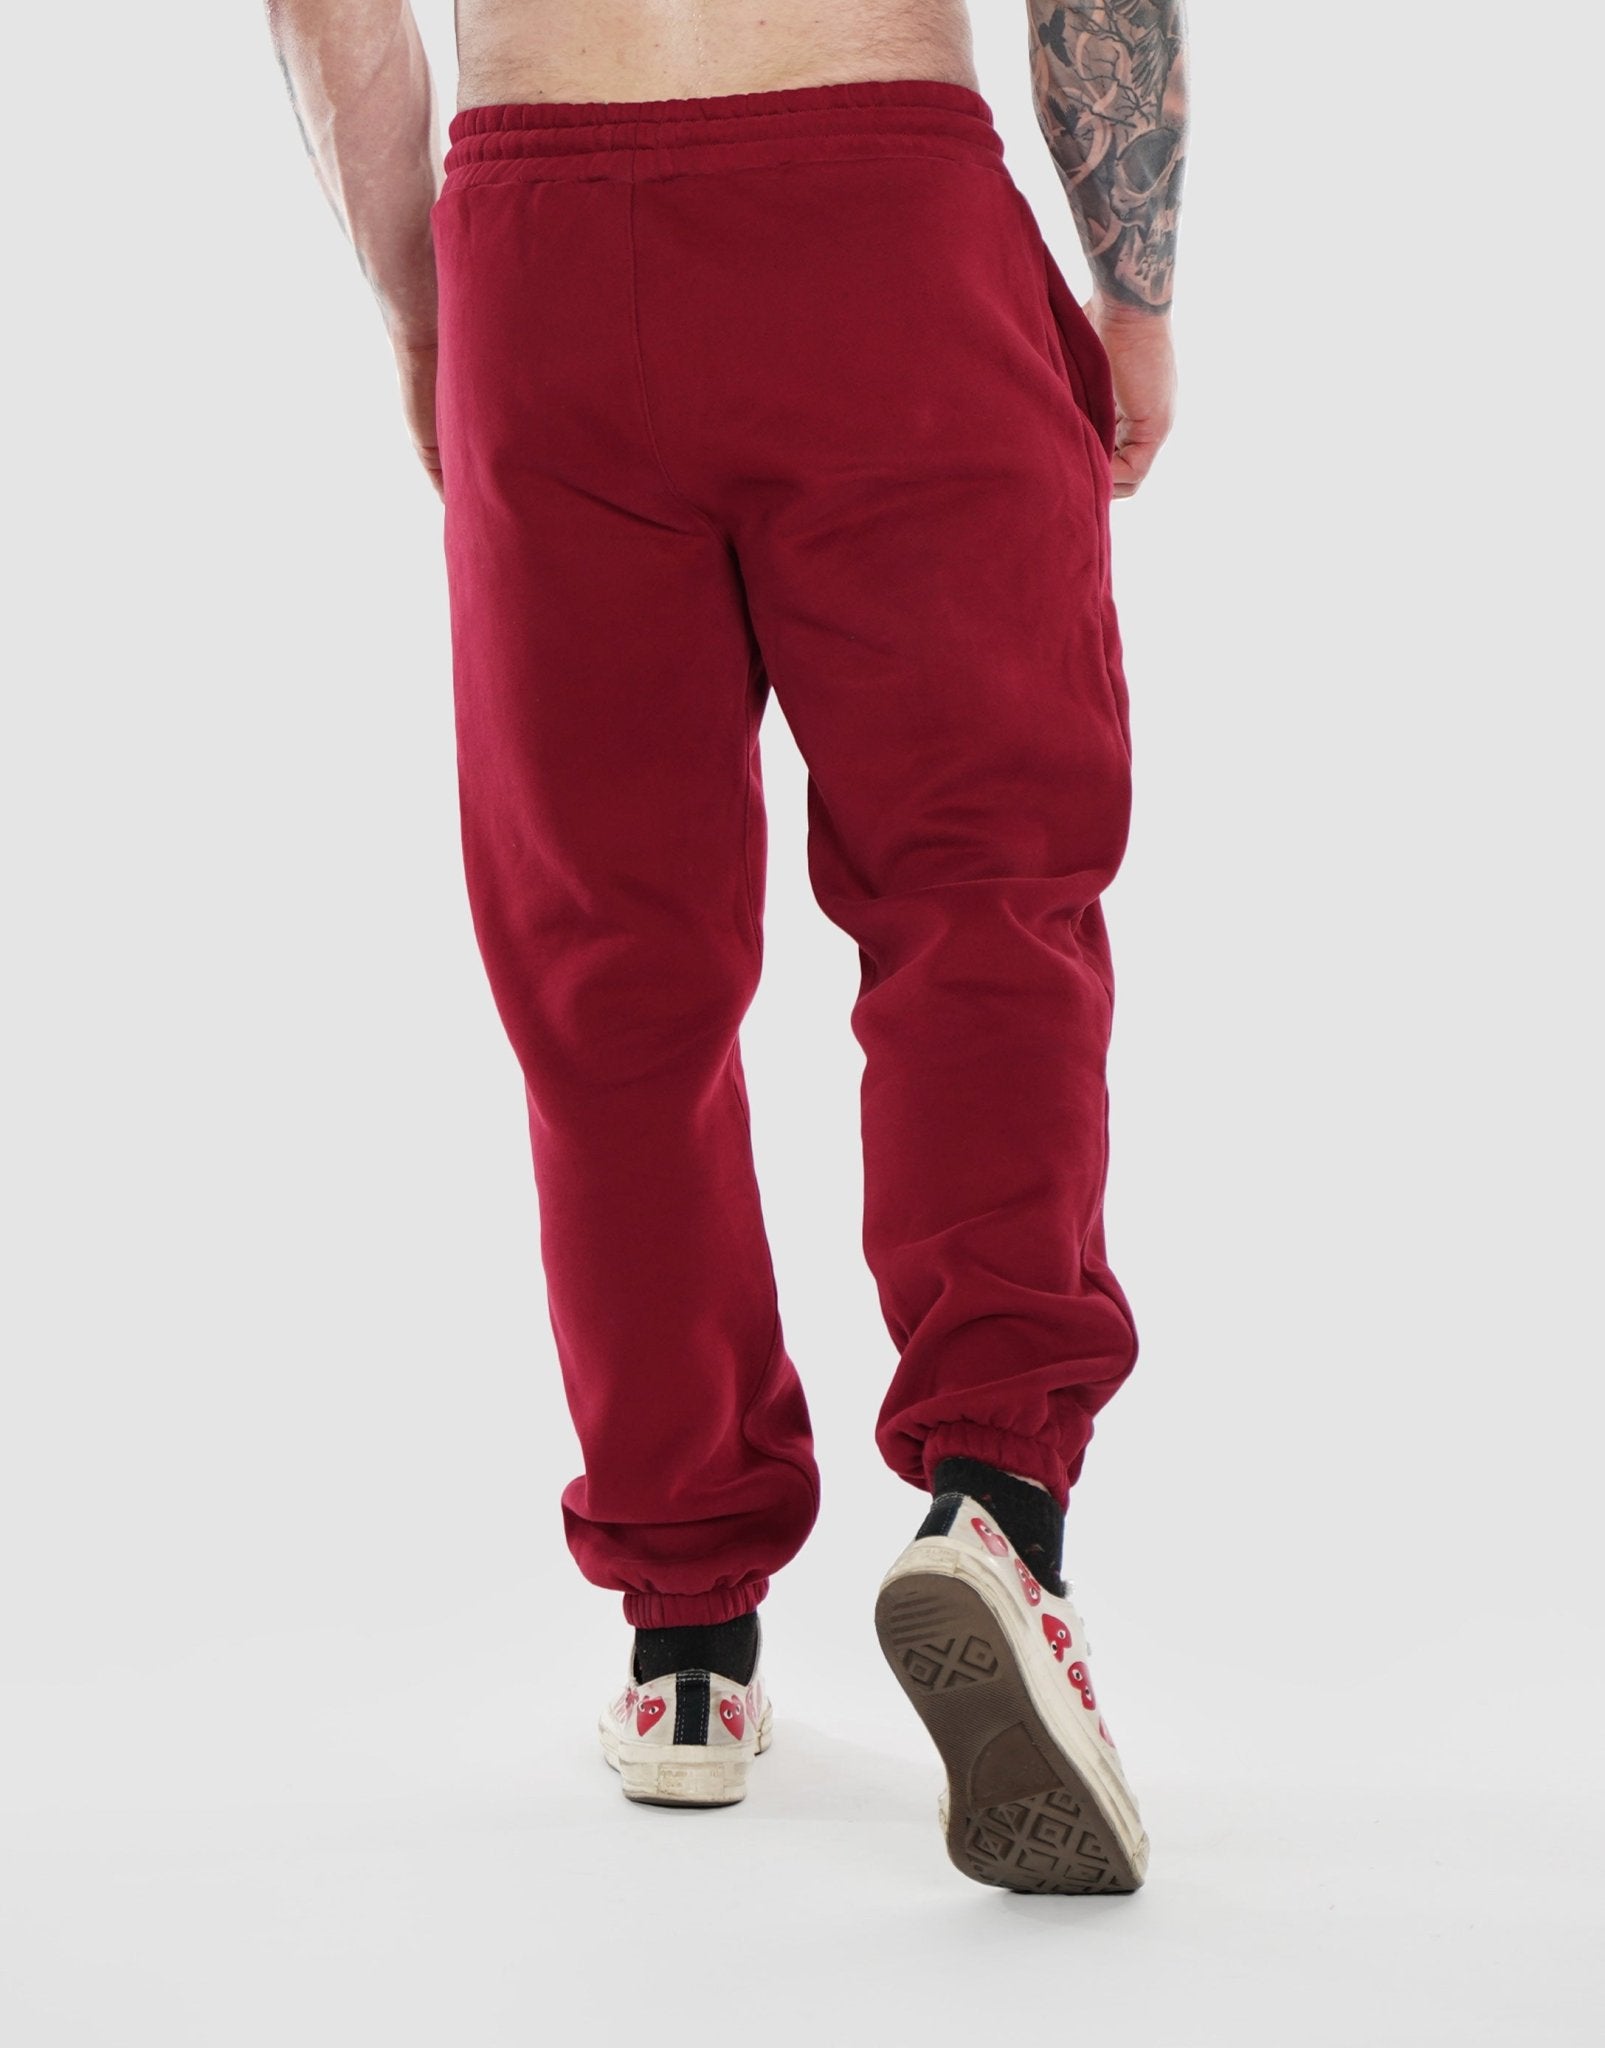 https://devoteewear.ca/cdn/shop/products/devoteewear-the-ultimate-comfort-sweatpants-sweatpant-701128.jpg?v=1697478561&width=1605